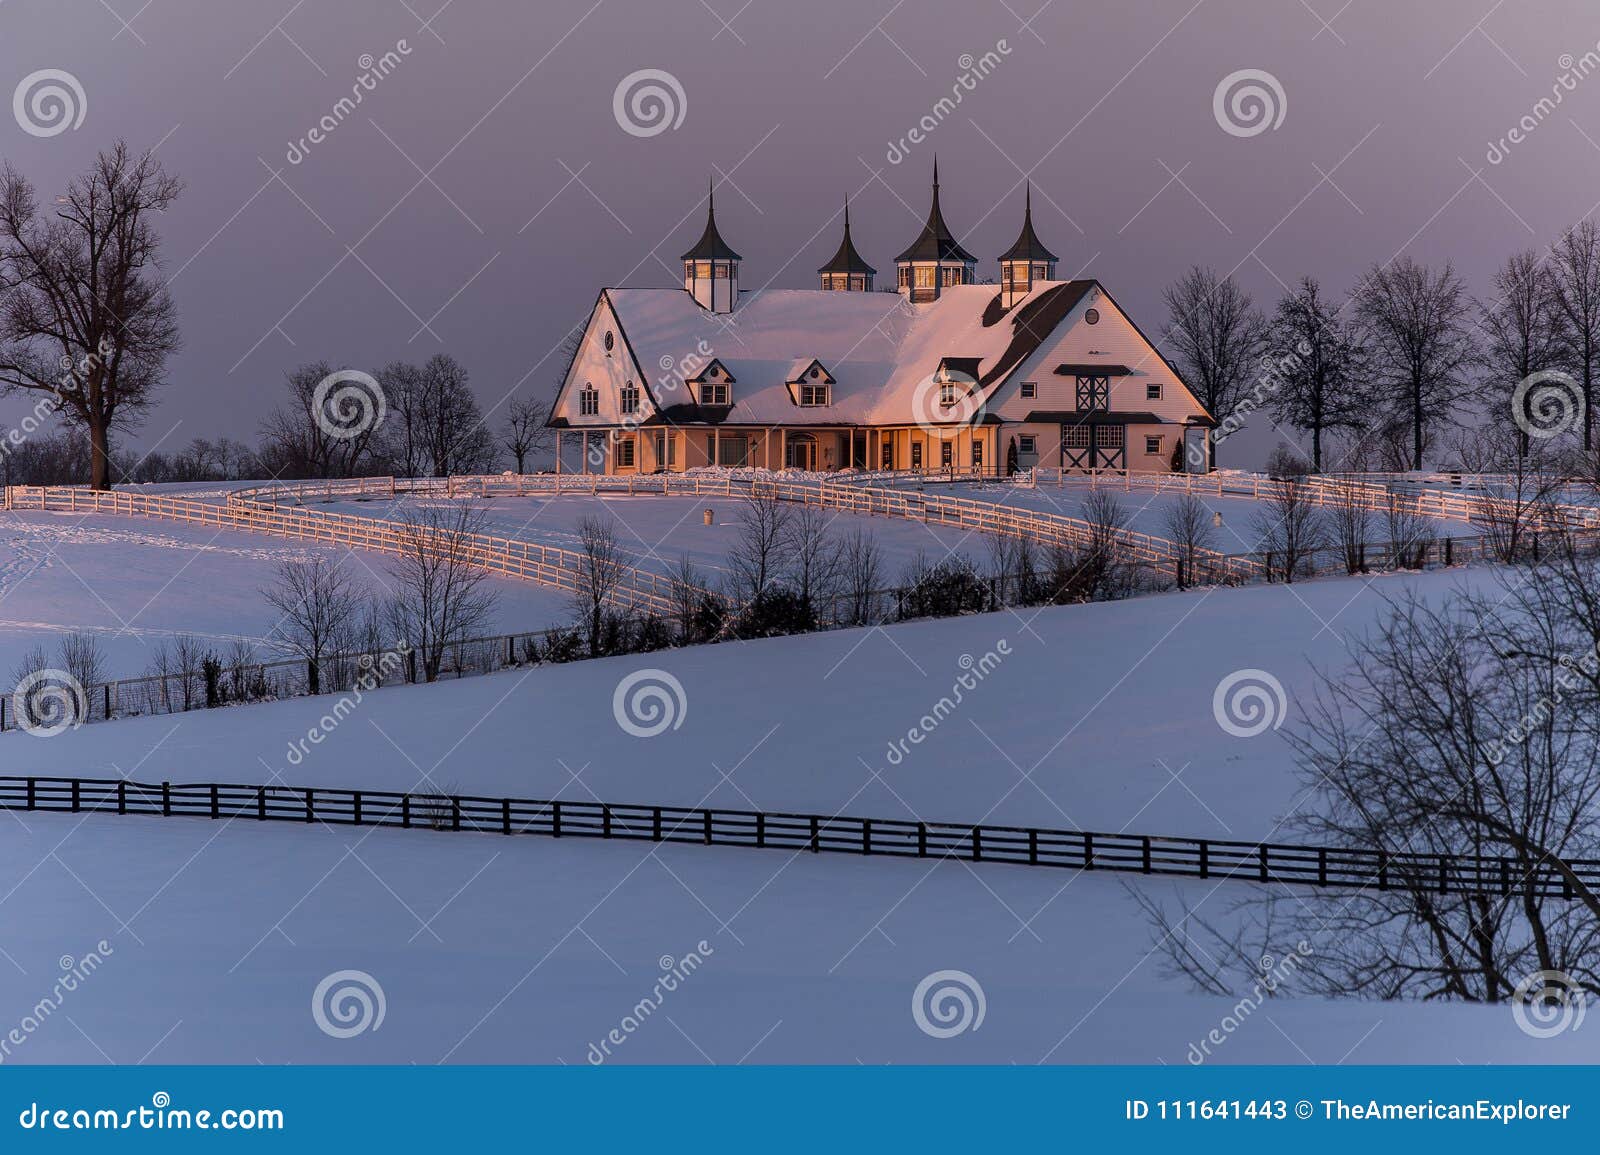 Historic, Snow Covered Manchester Farm Barn - Lexington 